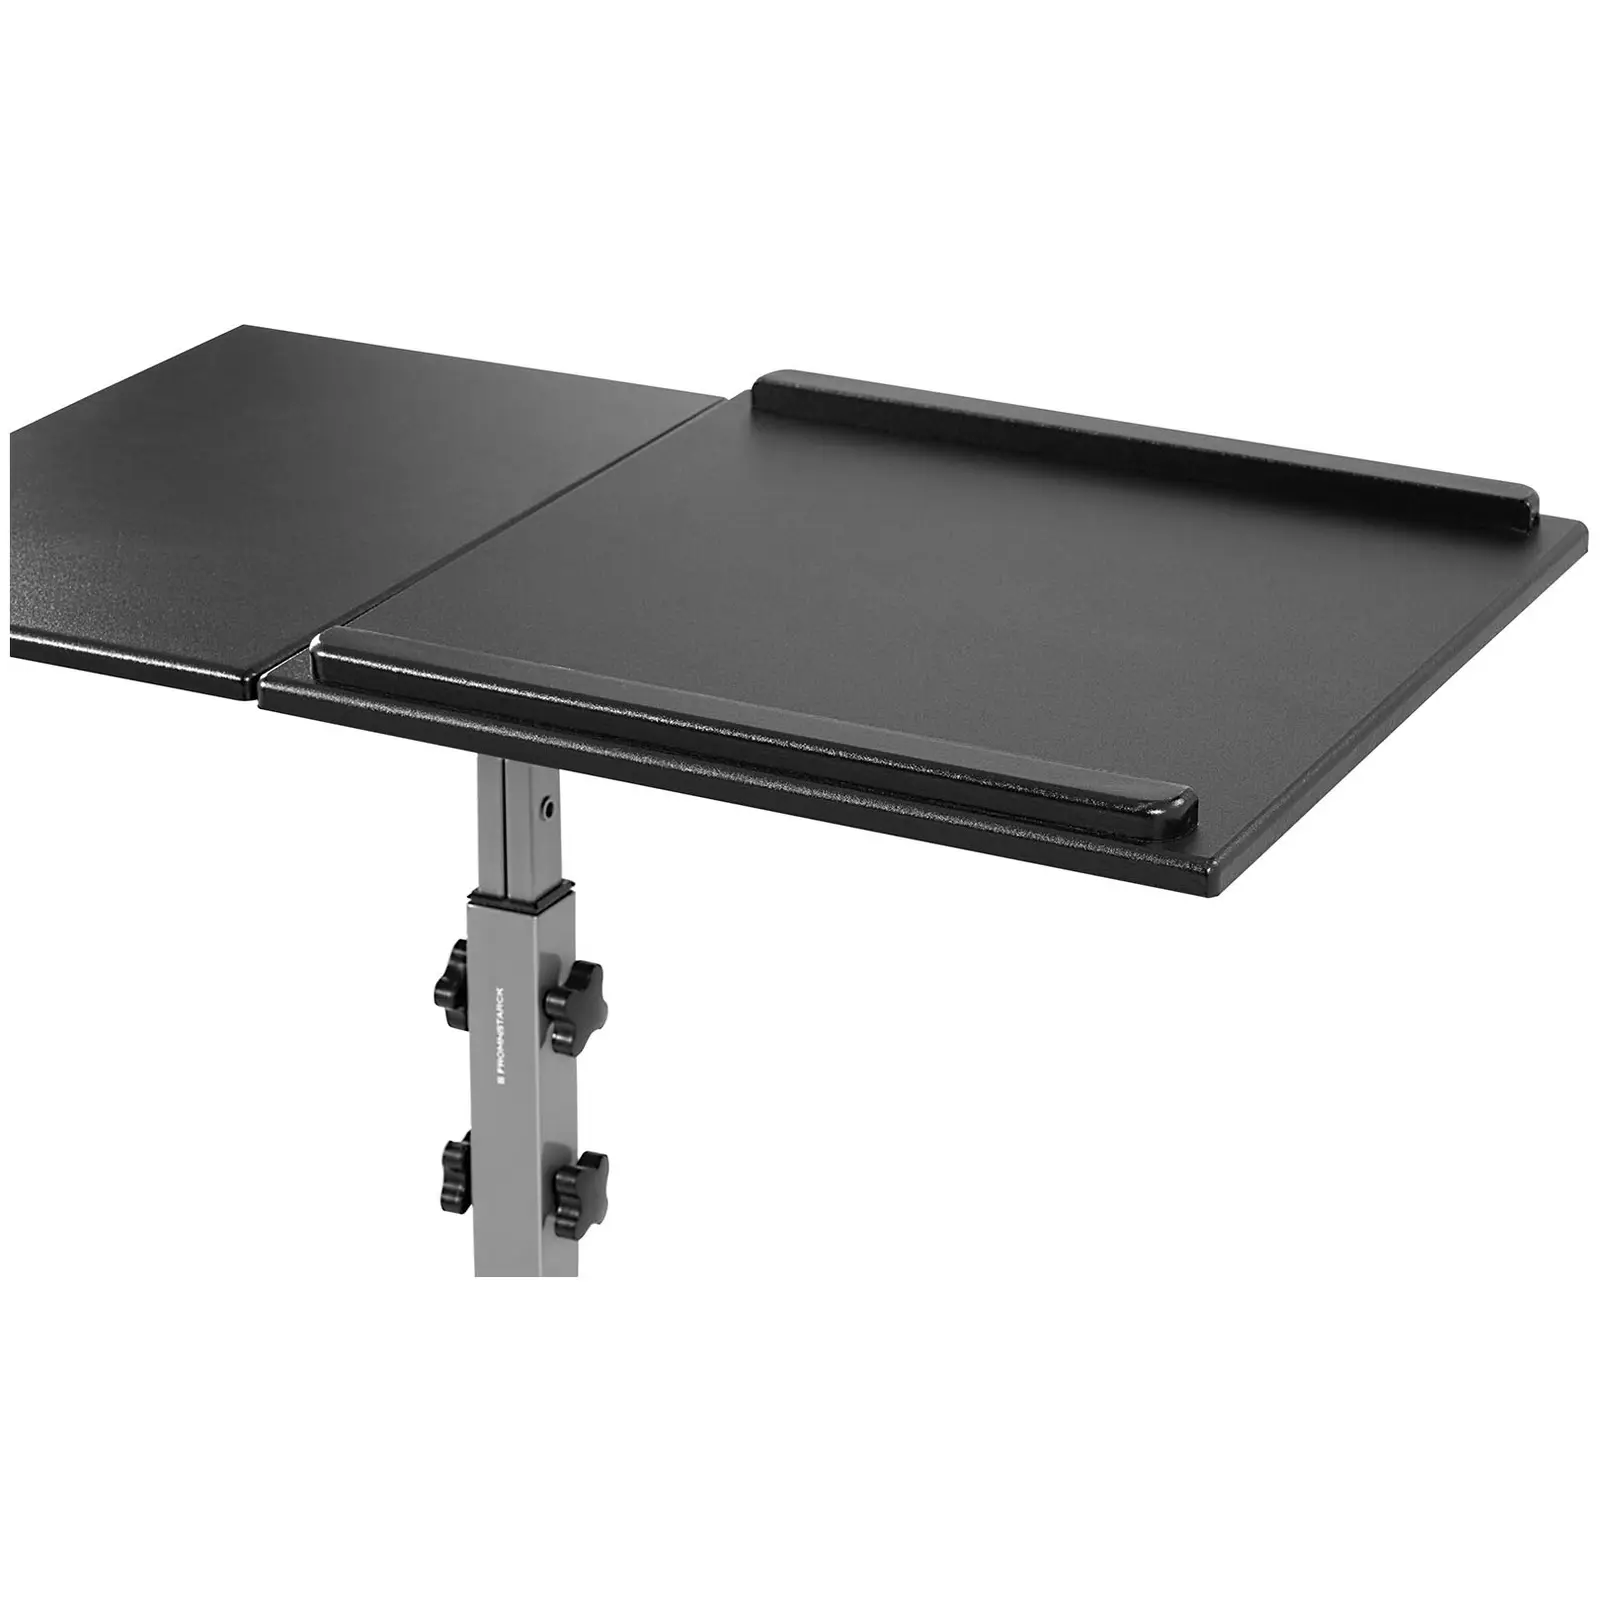 Tavolo per pc portatile - 45 x 75 cm - Altezza: 770 - 870 mm - altezza: 770 - 870 mm